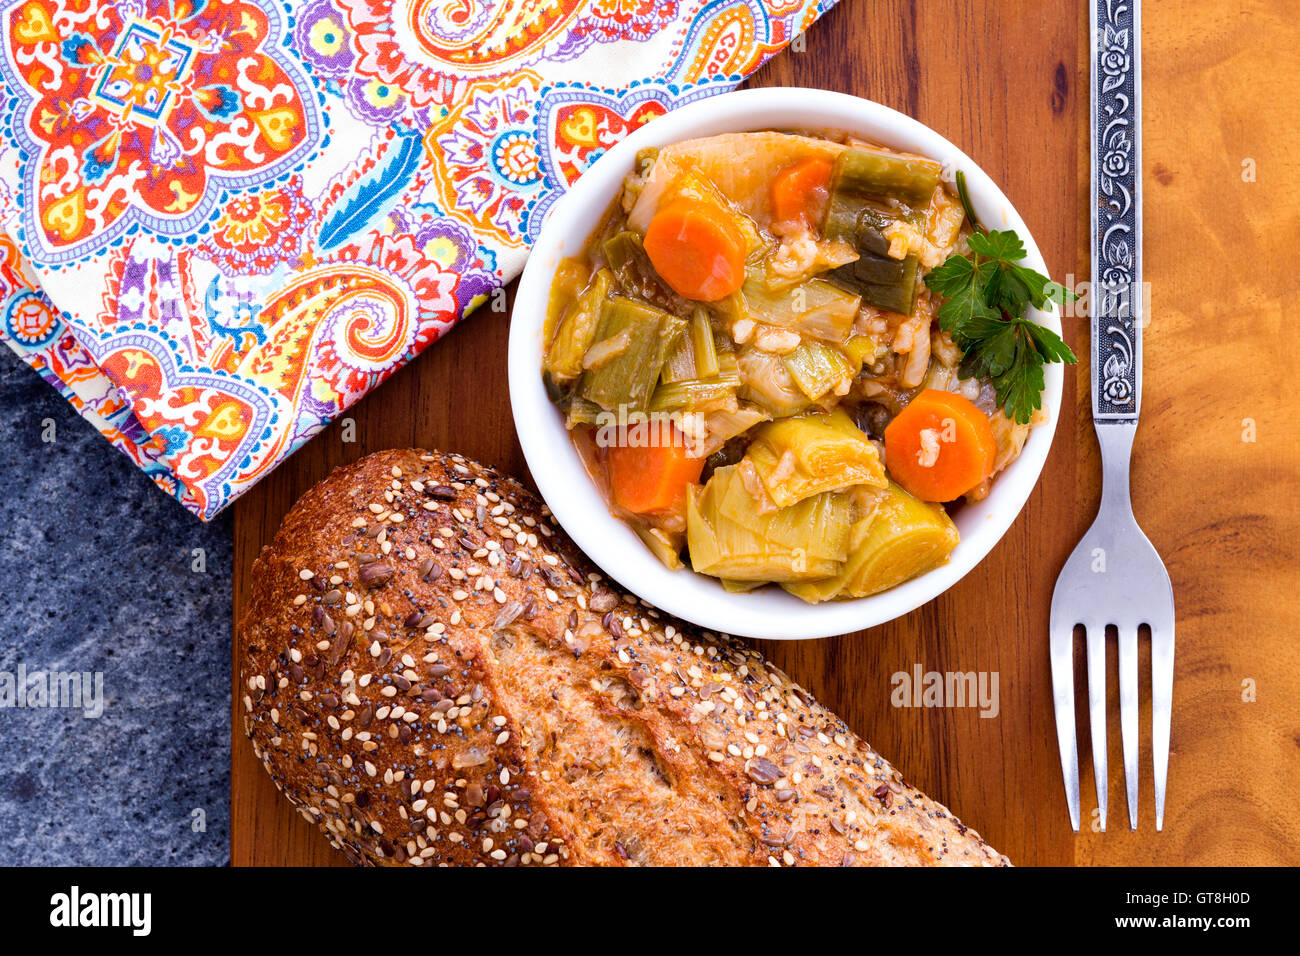 Schale mit leckeren hausgemachten Lauch und Karotten Eintopf in der Küche auf einem Holzbrett serviert, mit einer Gabel und bunte Serviette, Stockfoto